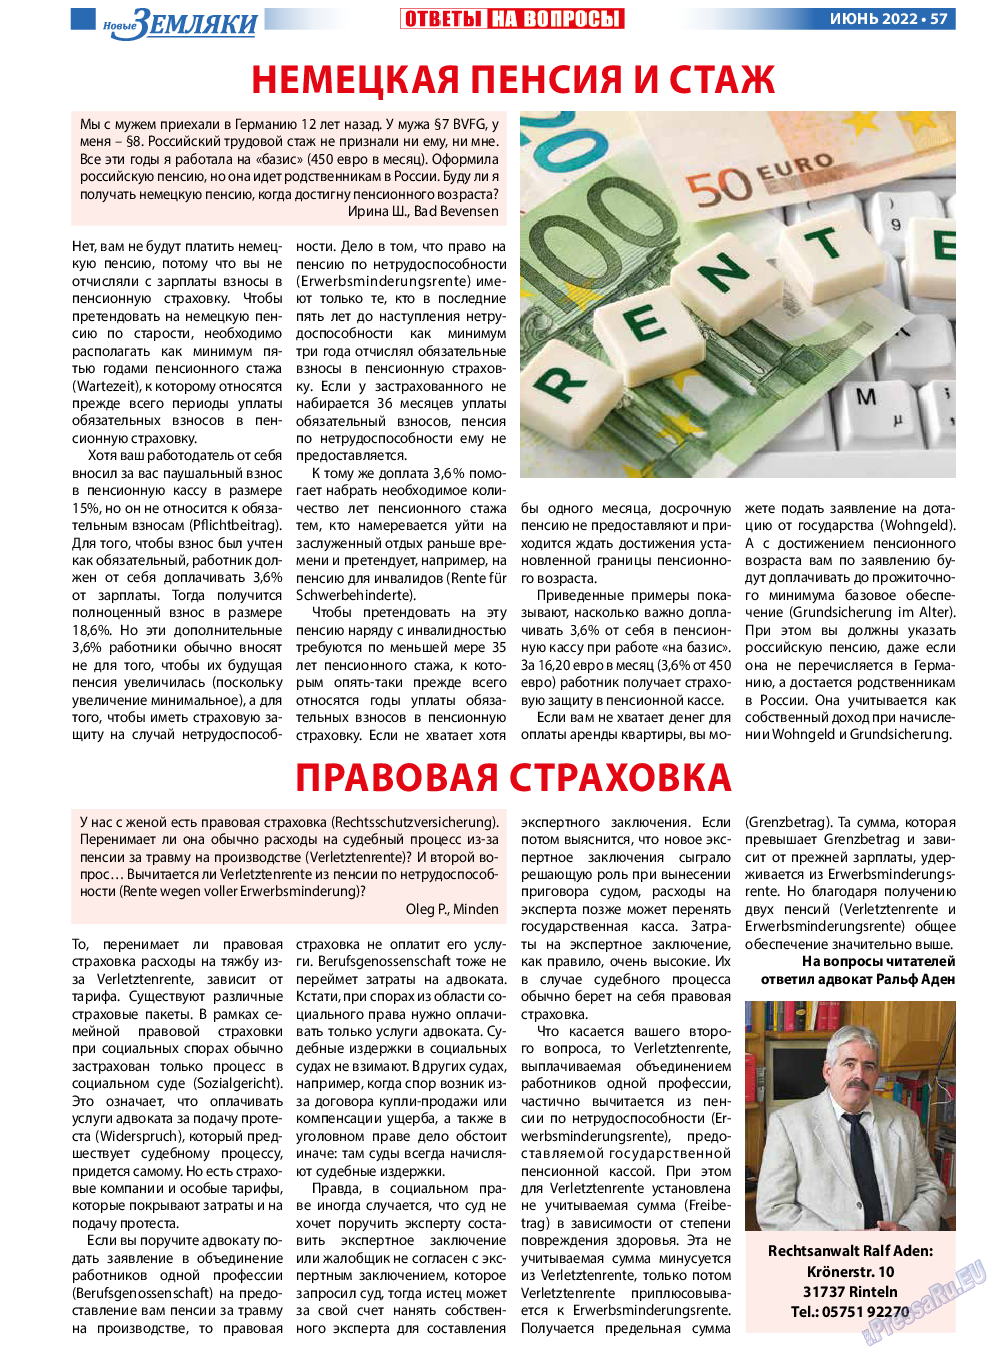 Новые Земляки, газета. 2022 №6 стр.57